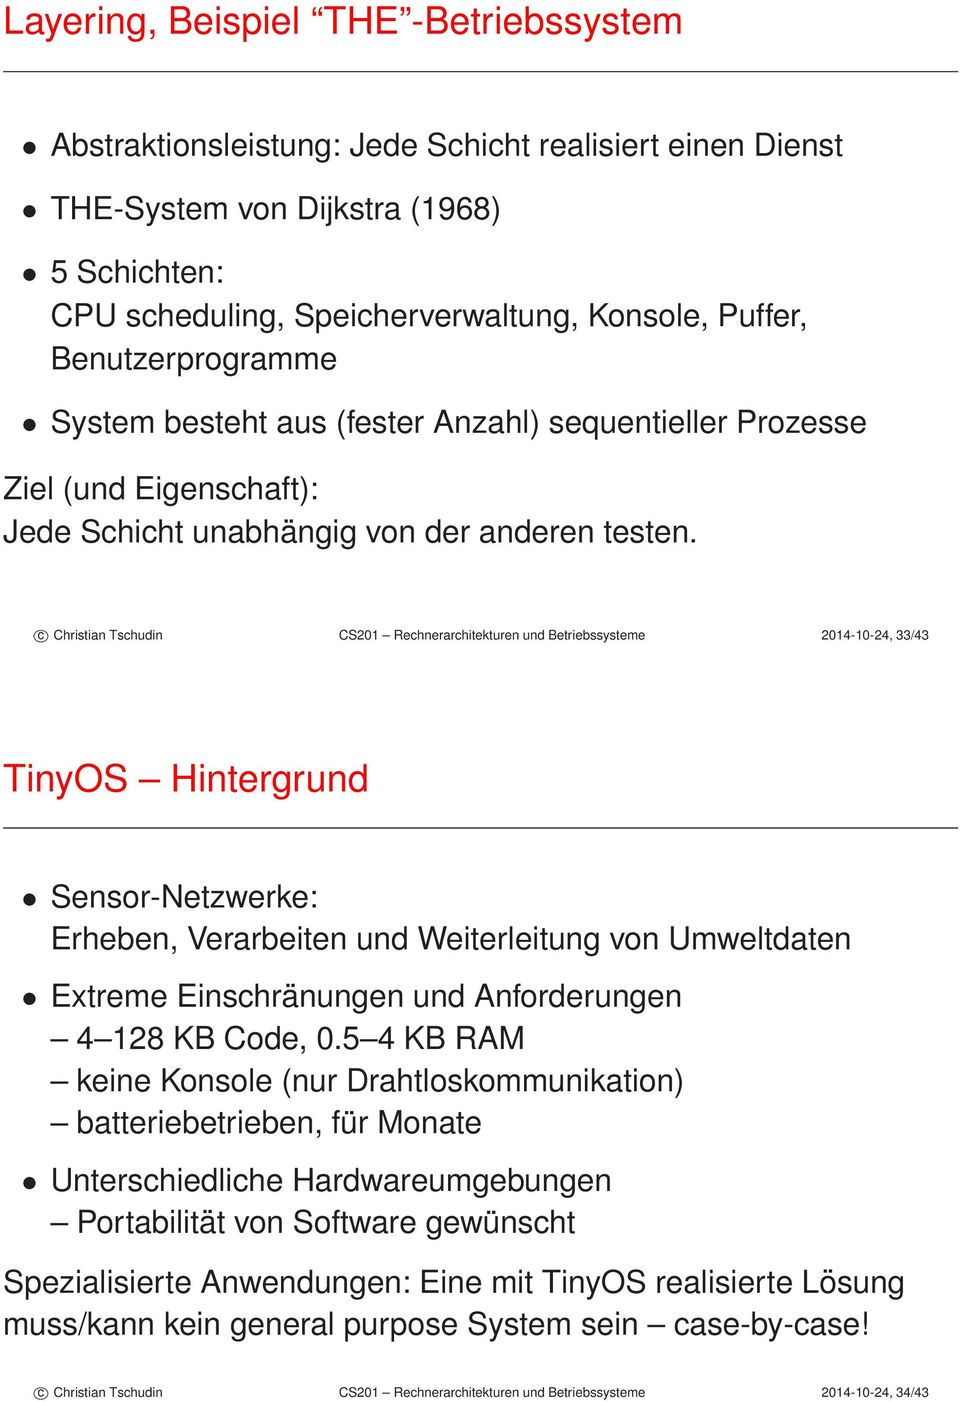 c Christian Tschudin CS201 Rechnerarchitekturen und Betriebssysteme 2014-10-24, 33/43 TinyOS Hintergrund Sensor-Netzwerke: Erheben, Verarbeiten und Weiterleitung von Umweltdaten Extreme